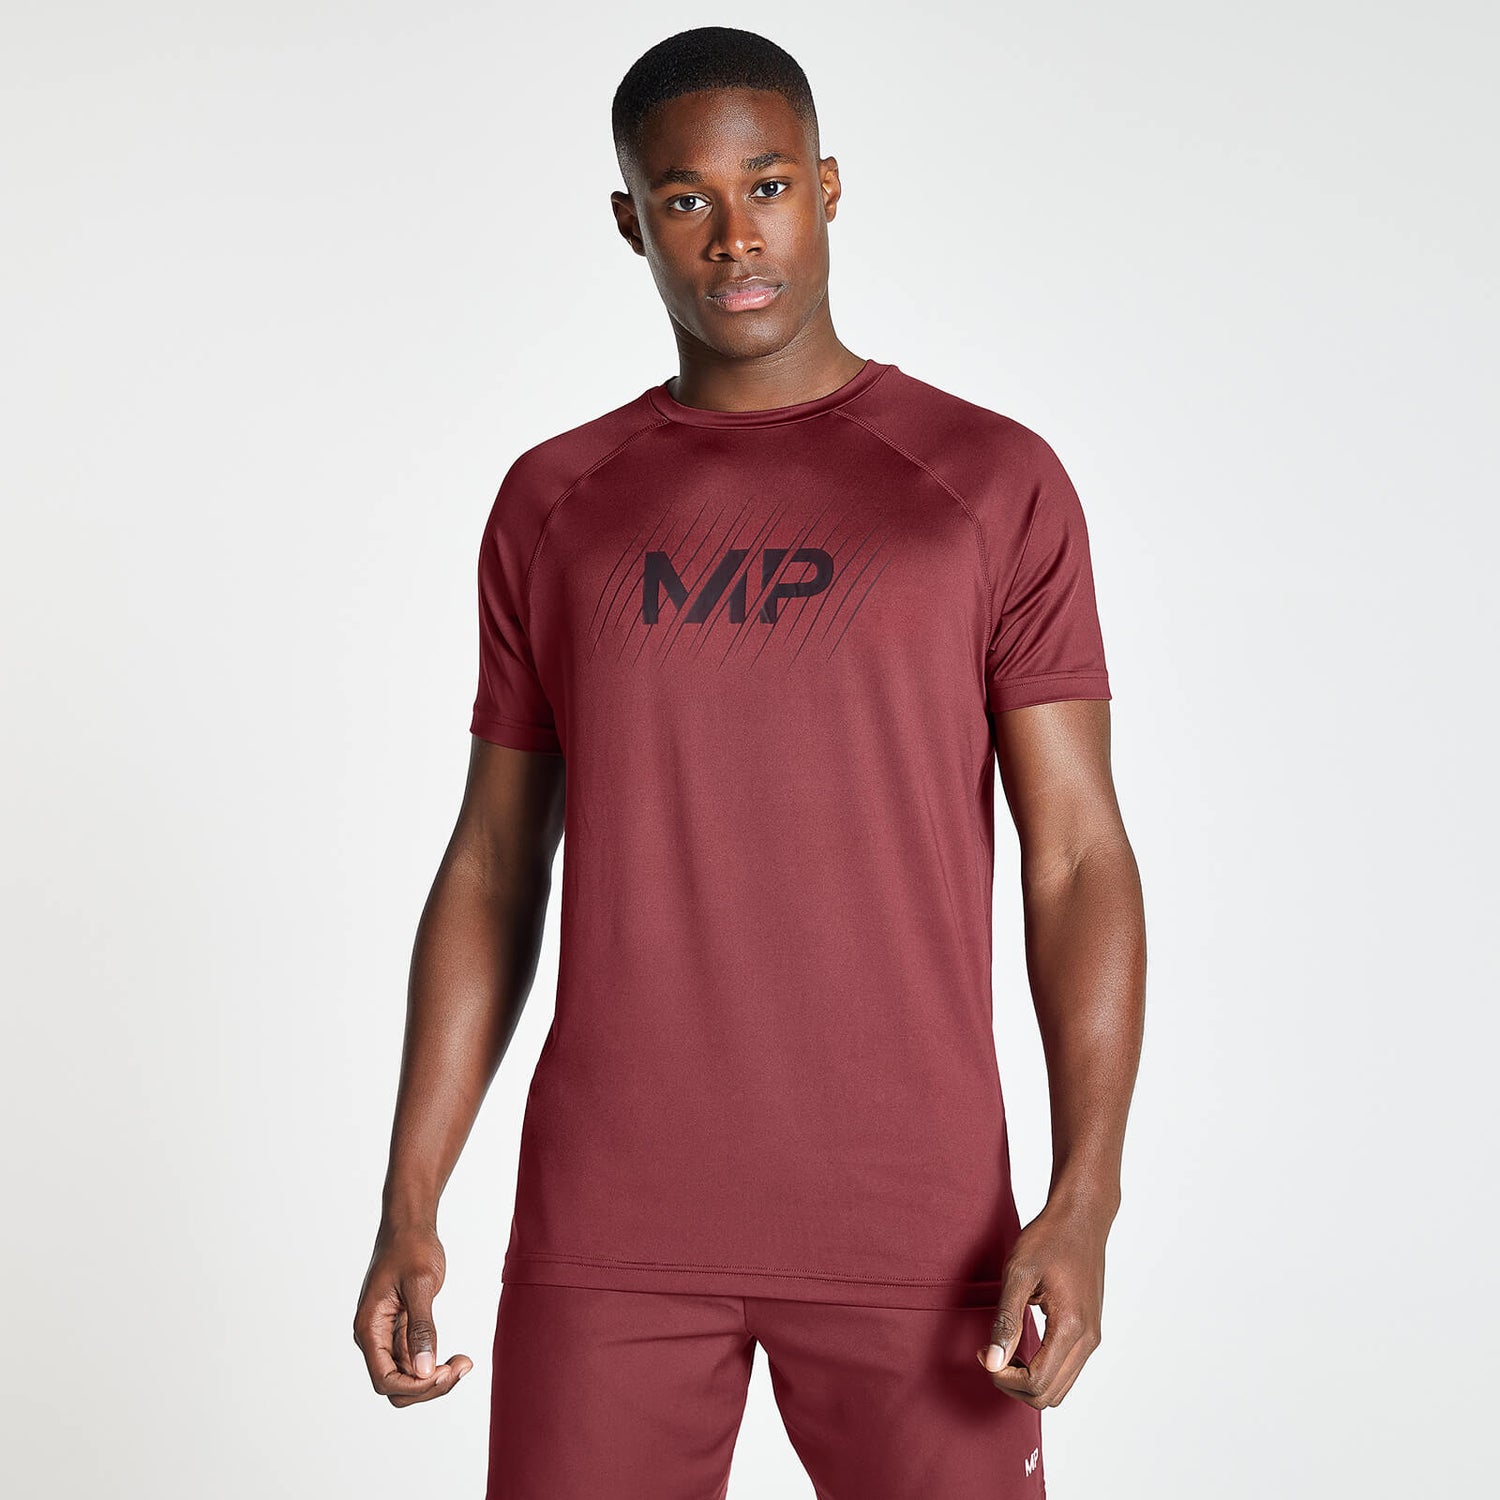 MP メンズ リニア ライン グラフィック エッセンシャル トレーニング ショートスリーブ Tシャツ - ダーク レッド - XS